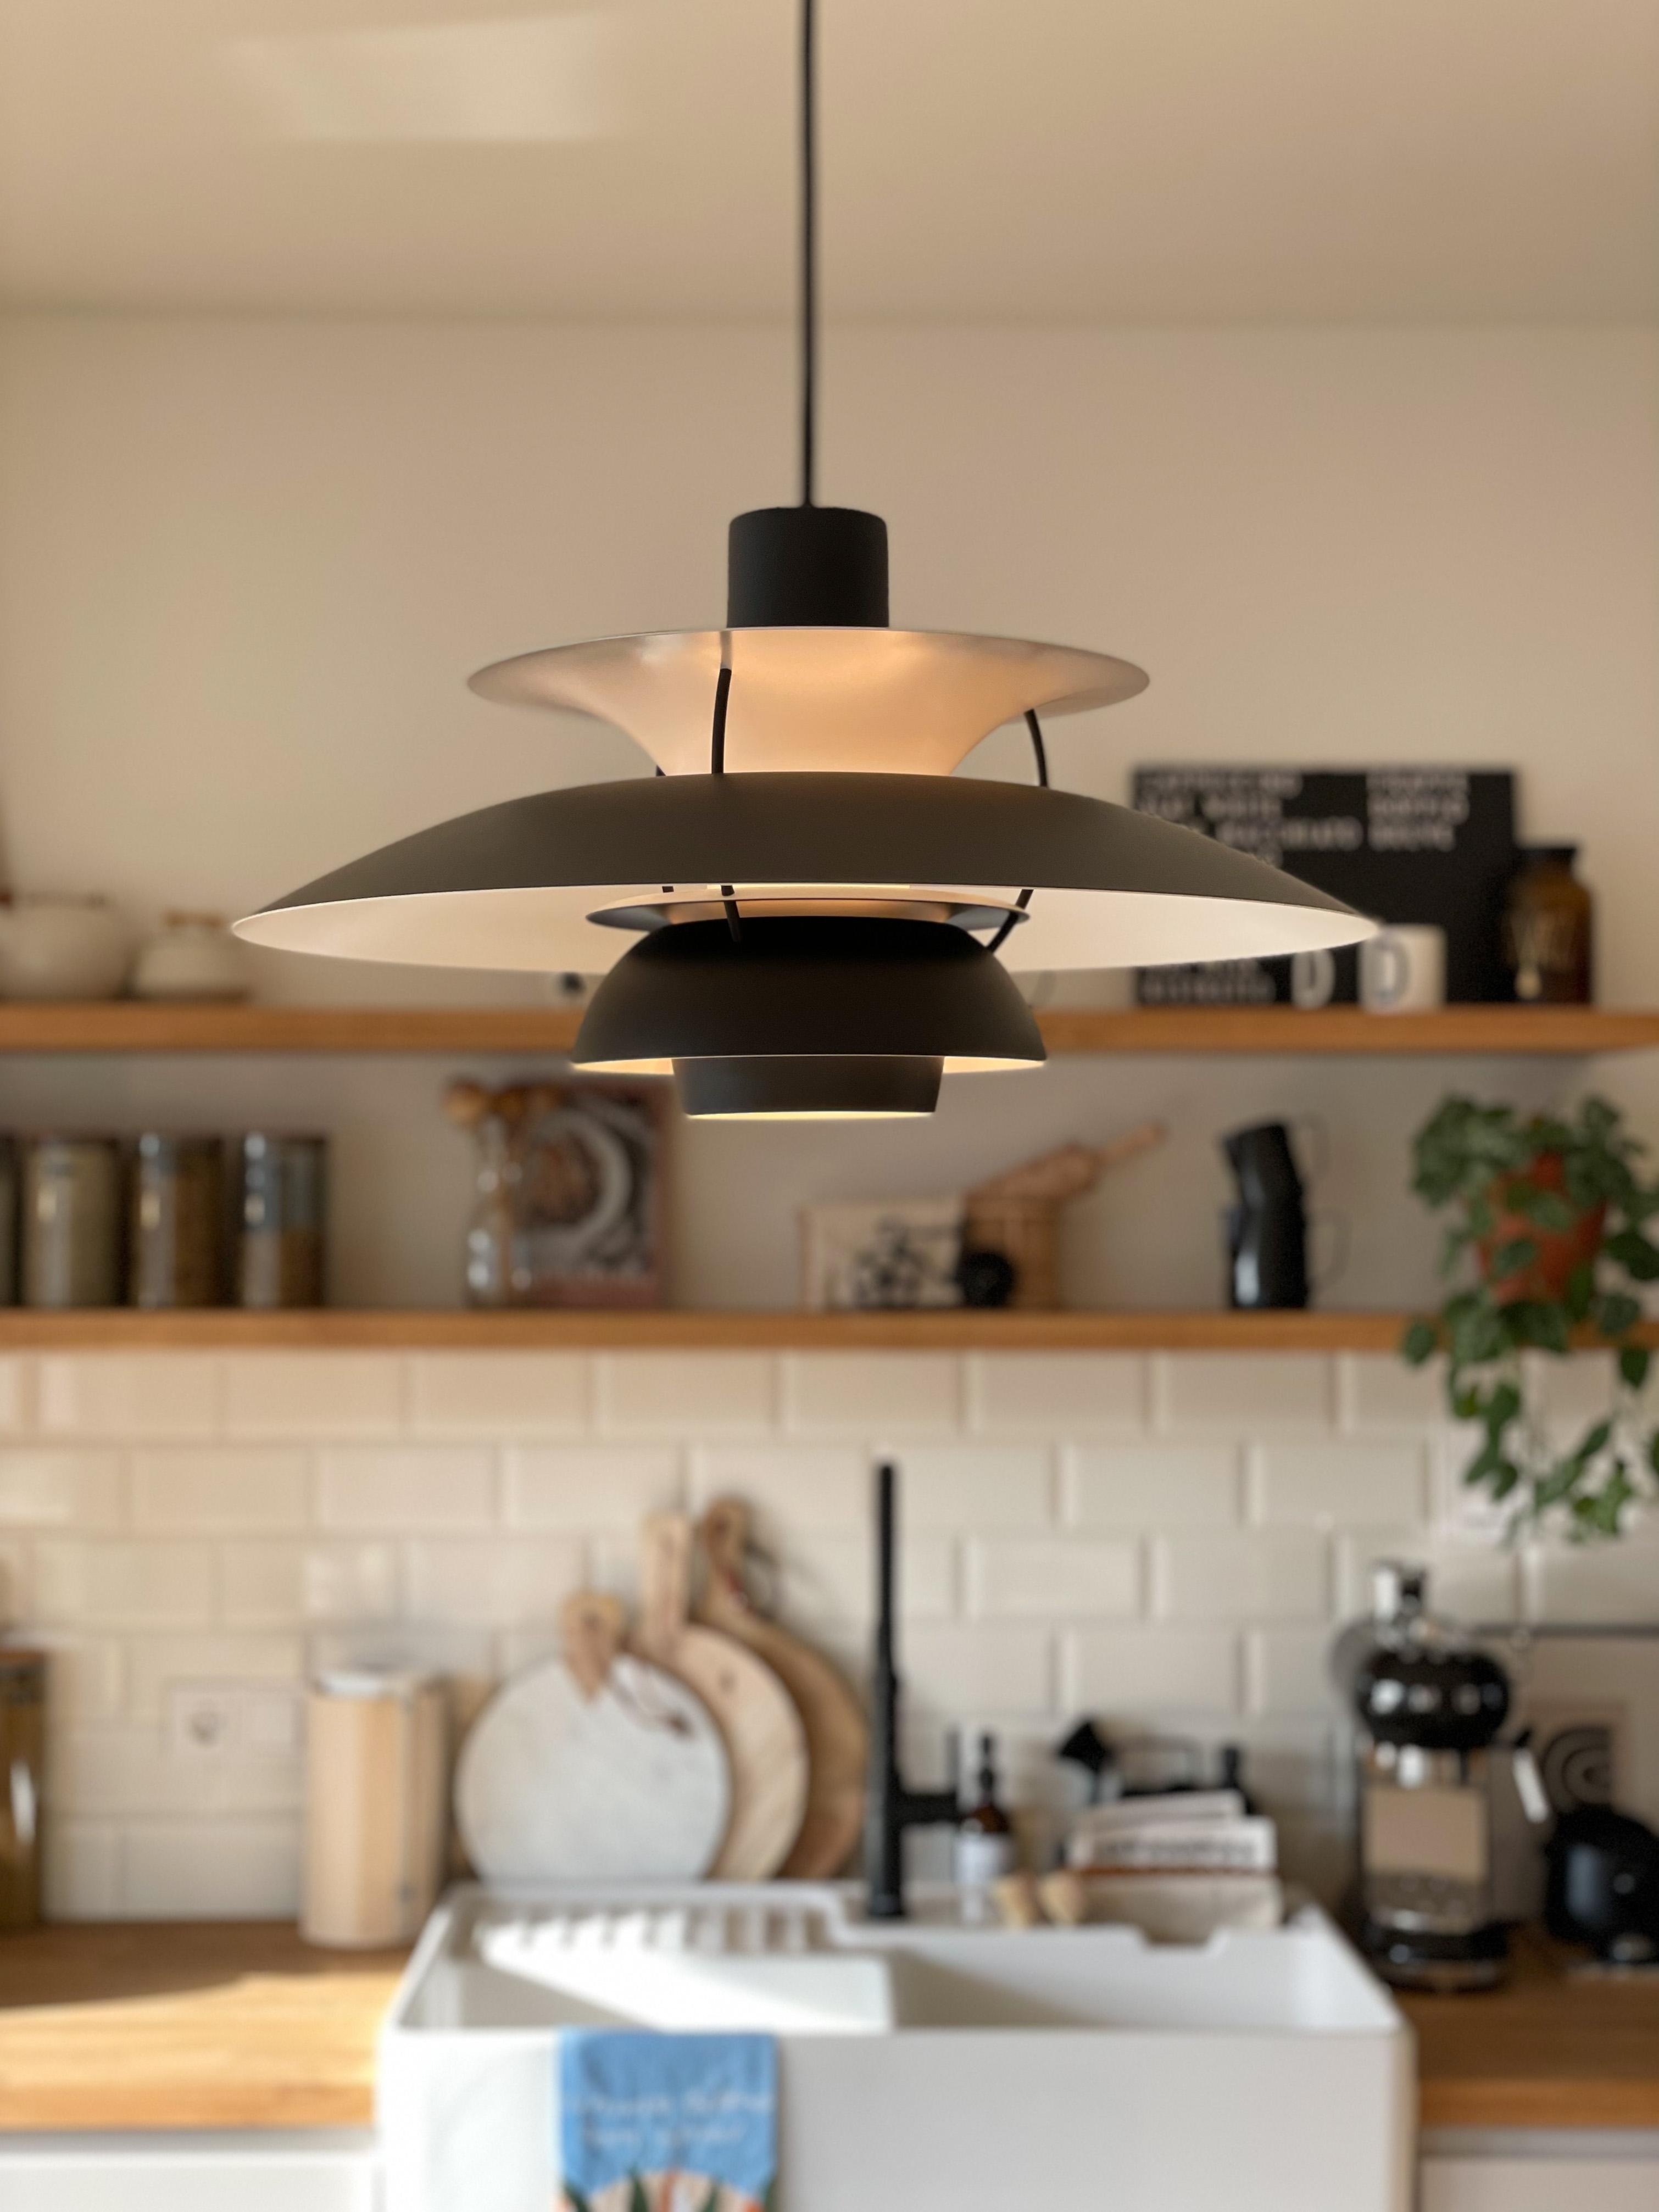 Es ist eine neue Lampe für die Küche eingezogen. 🖤 #couchstyle #louispoulsen #lampeninspo #küchenlampe #kücheninspo